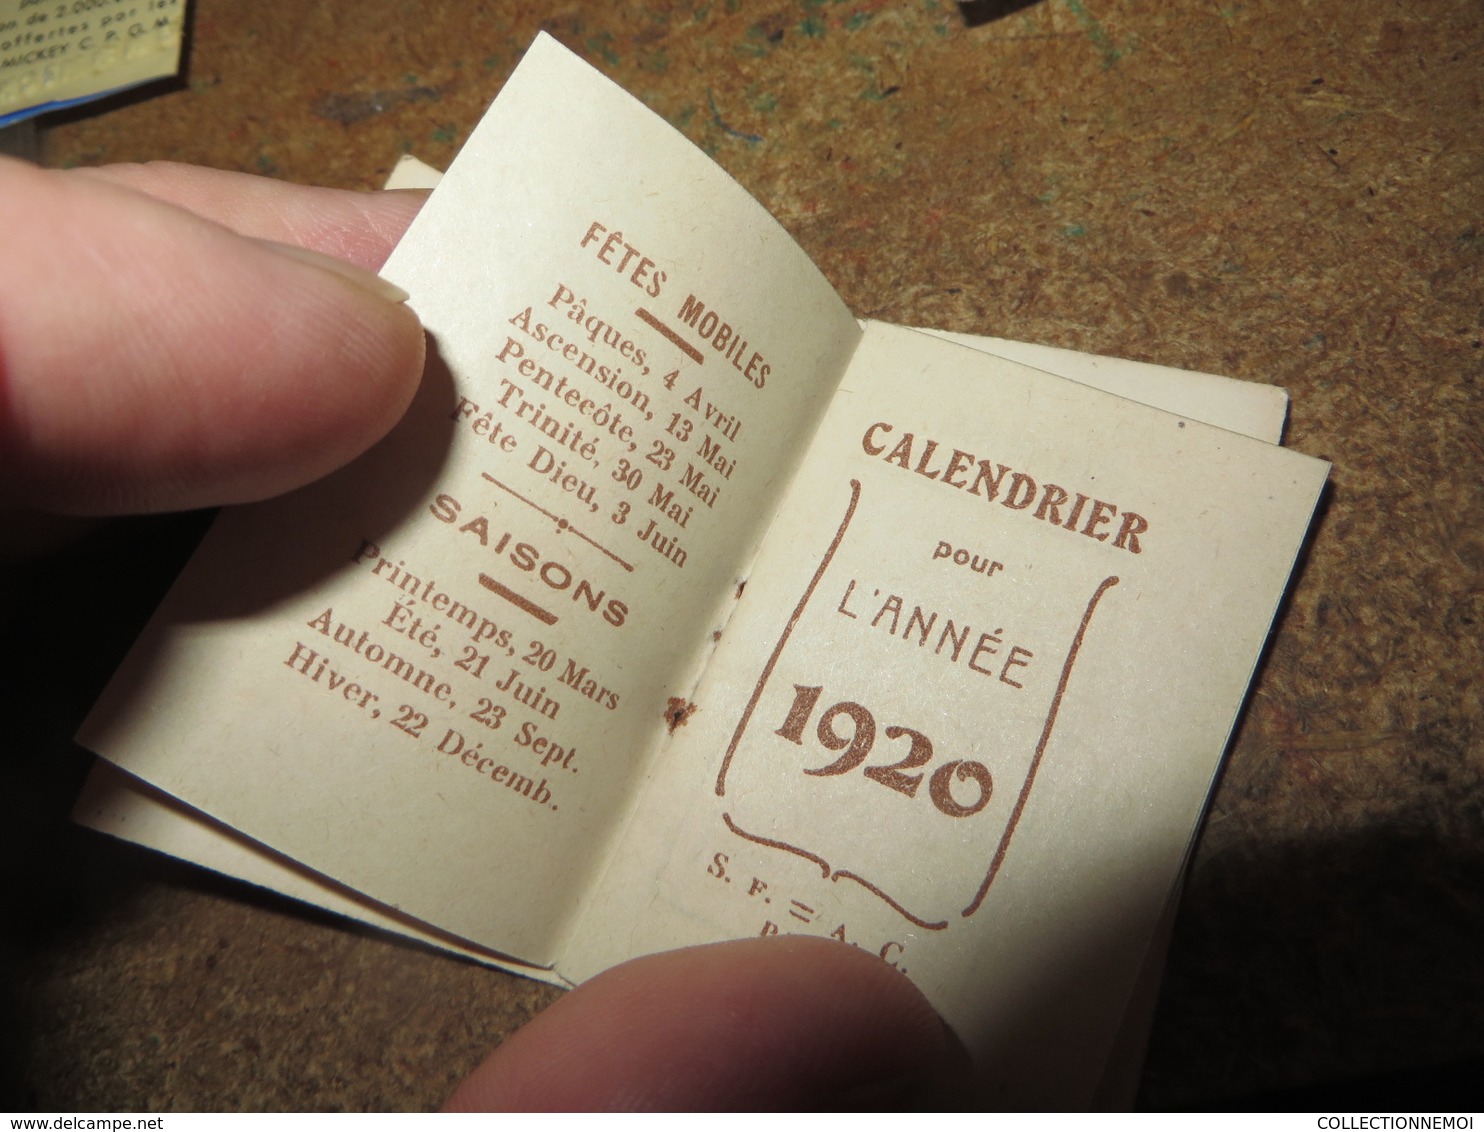 lot de 3 calendriers 1915 ,, 1920 ,, 1964 ,, sympa et tres petit prix (lot 424)